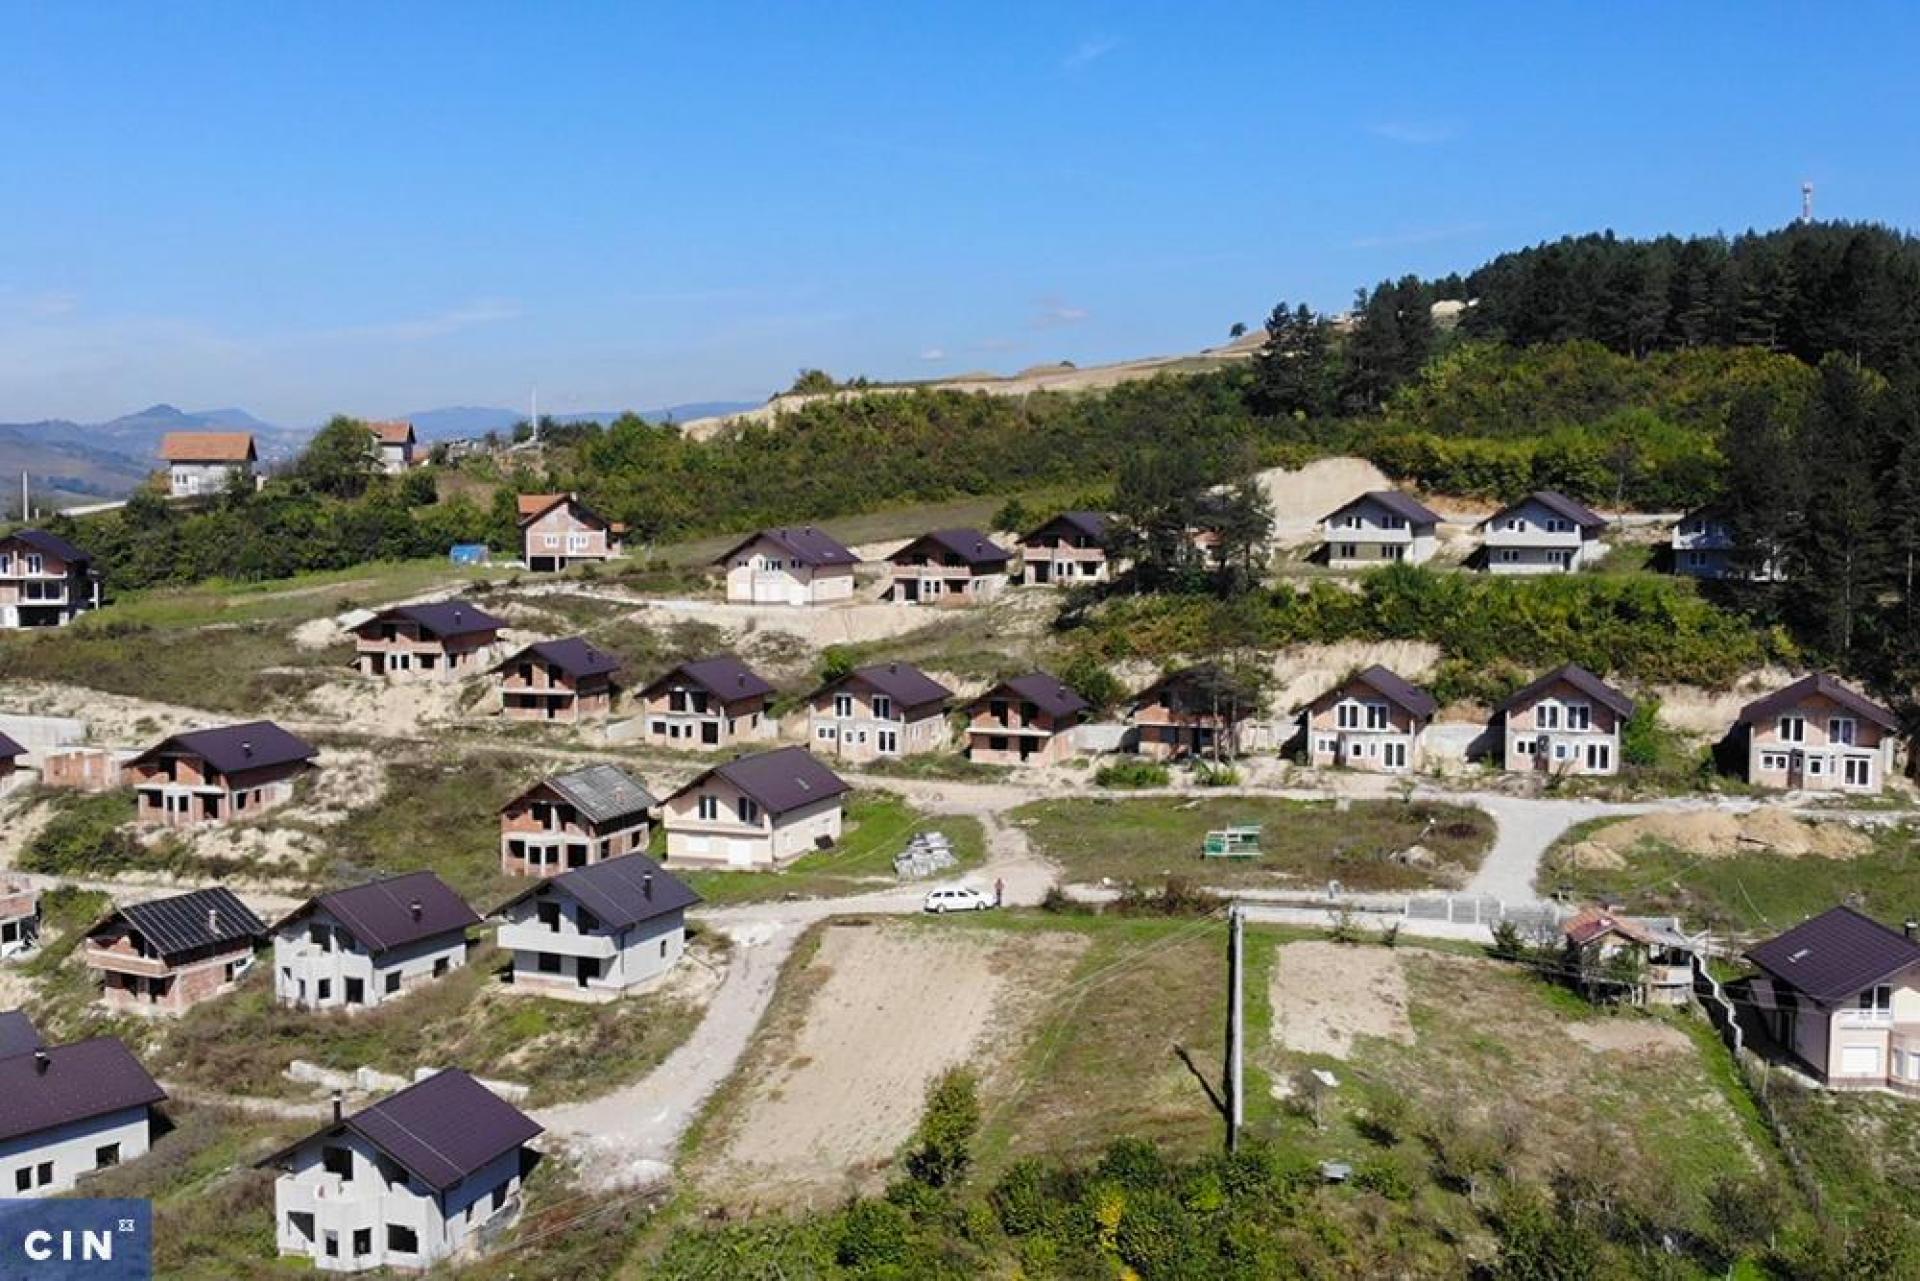 Unfinished Arab Resort near Sarajevo's part lliđa.